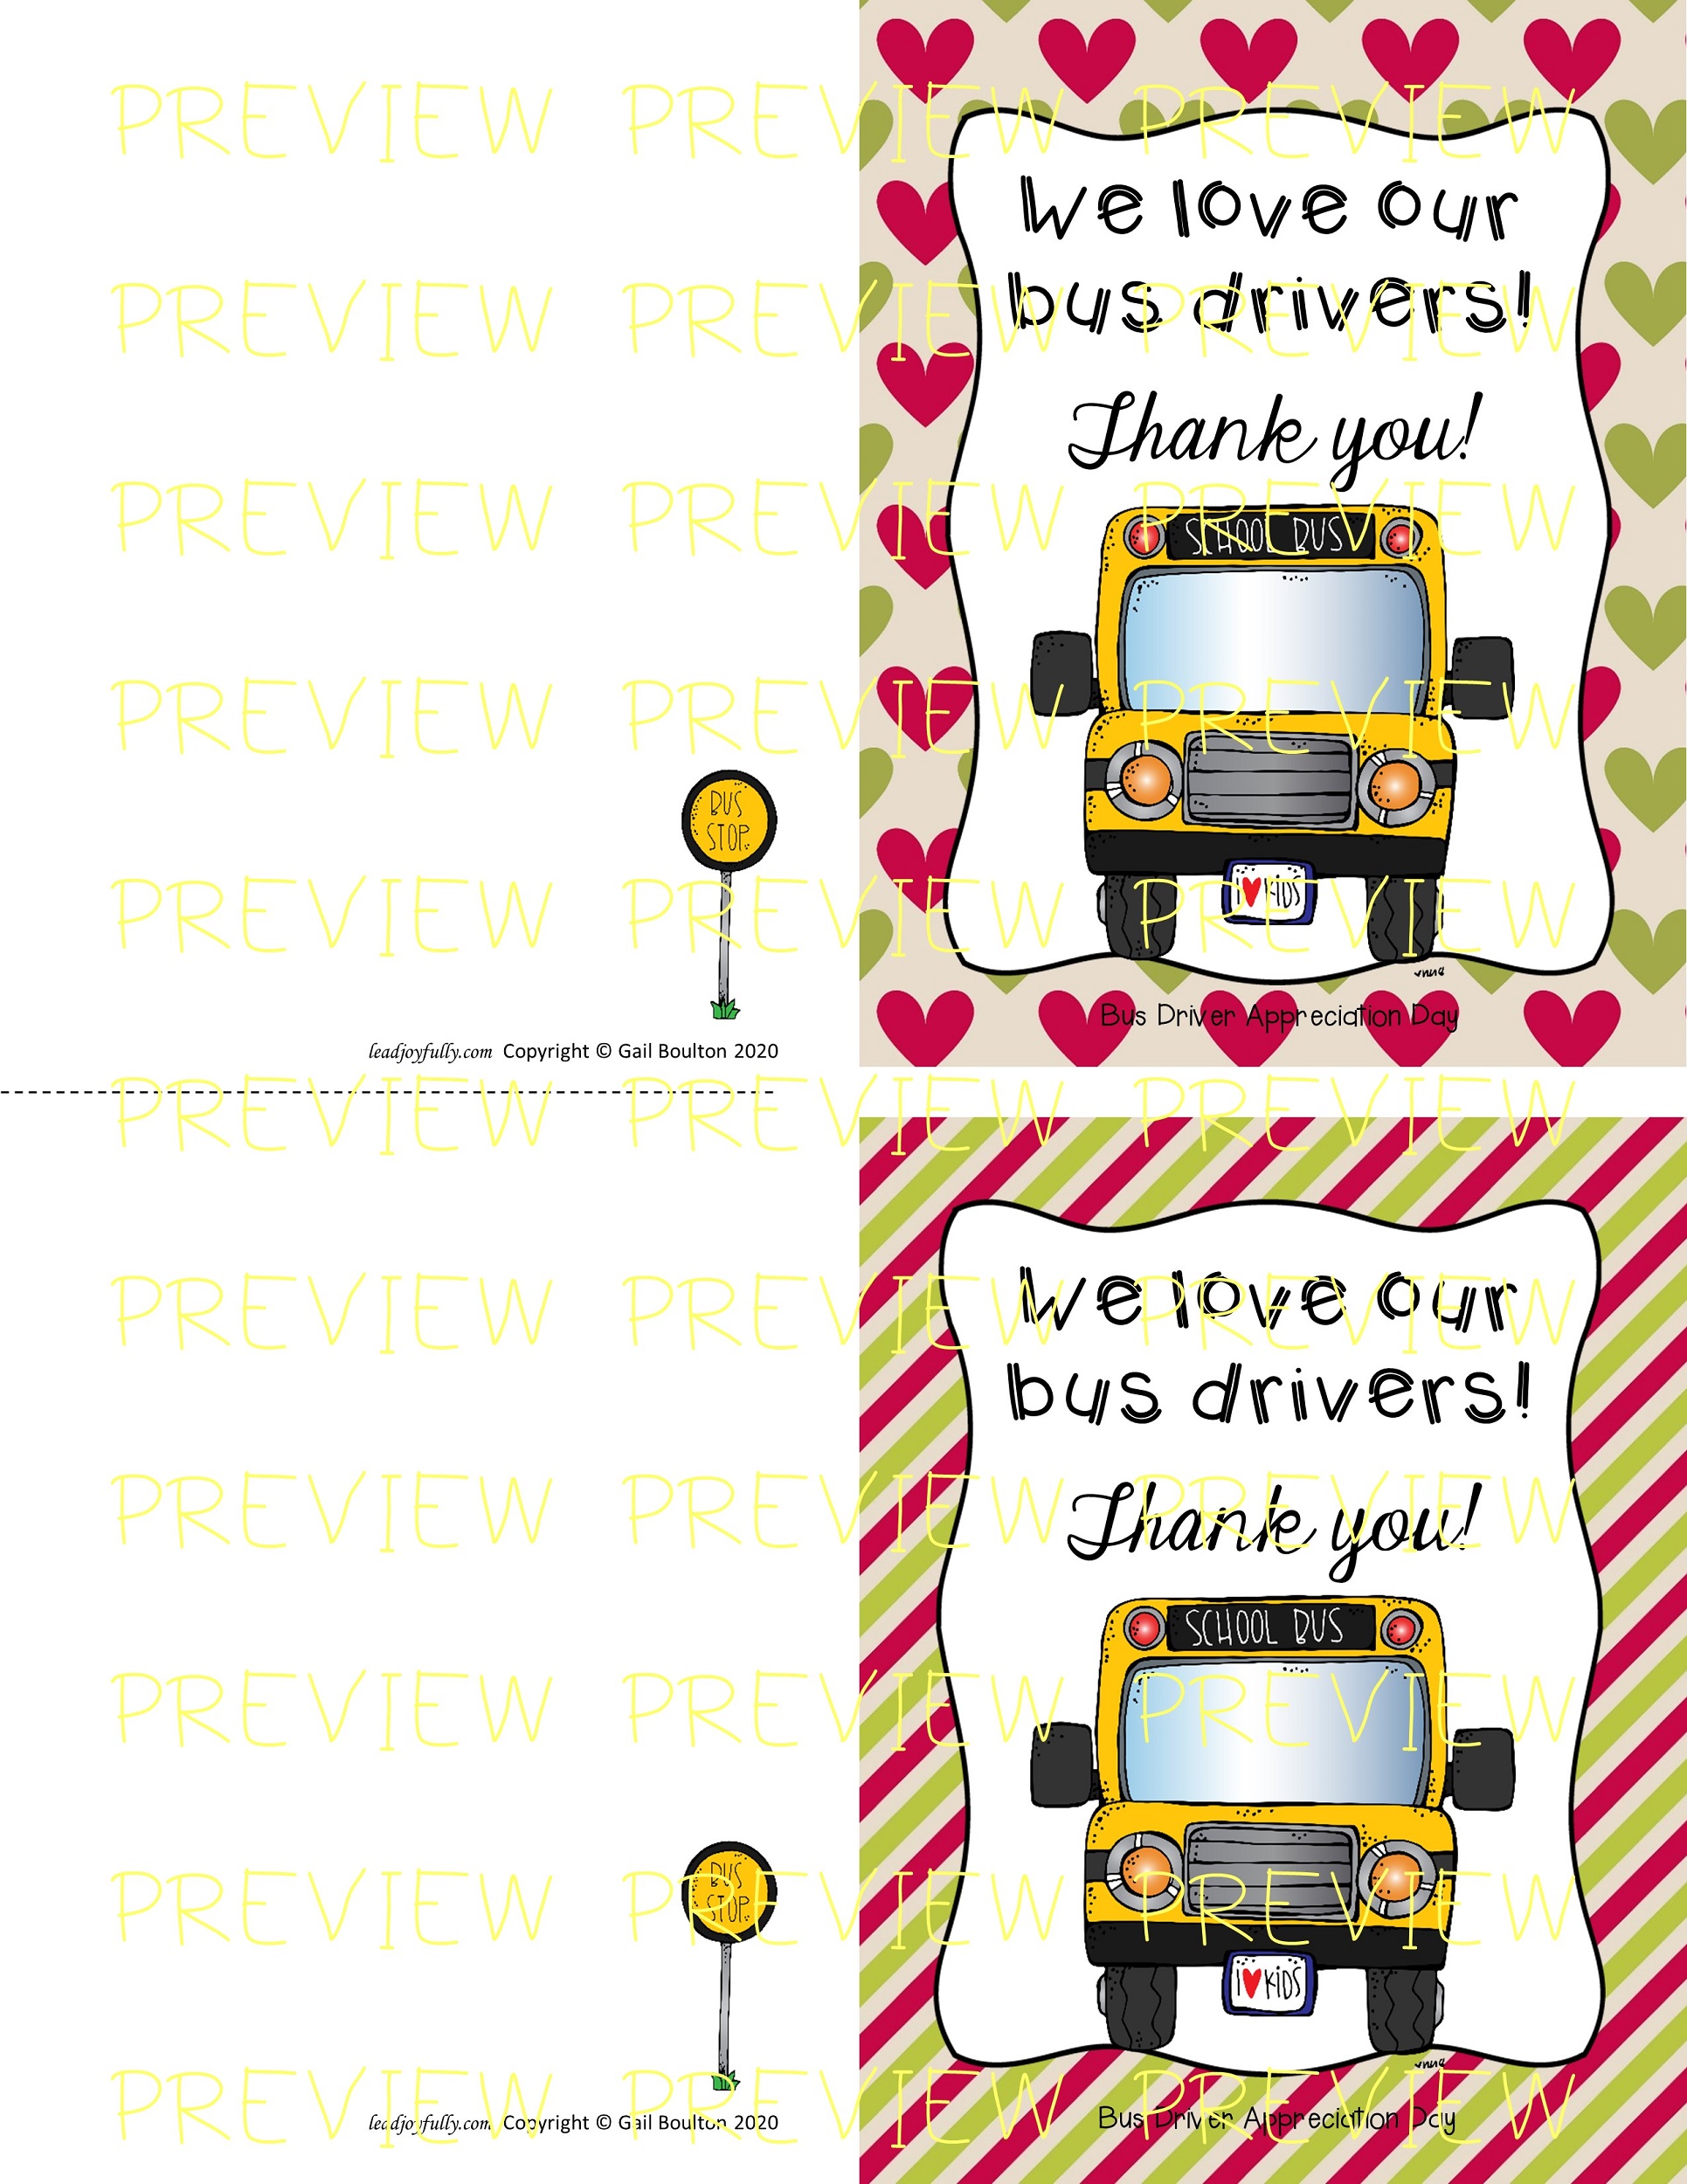 bus driver appreciation day printables